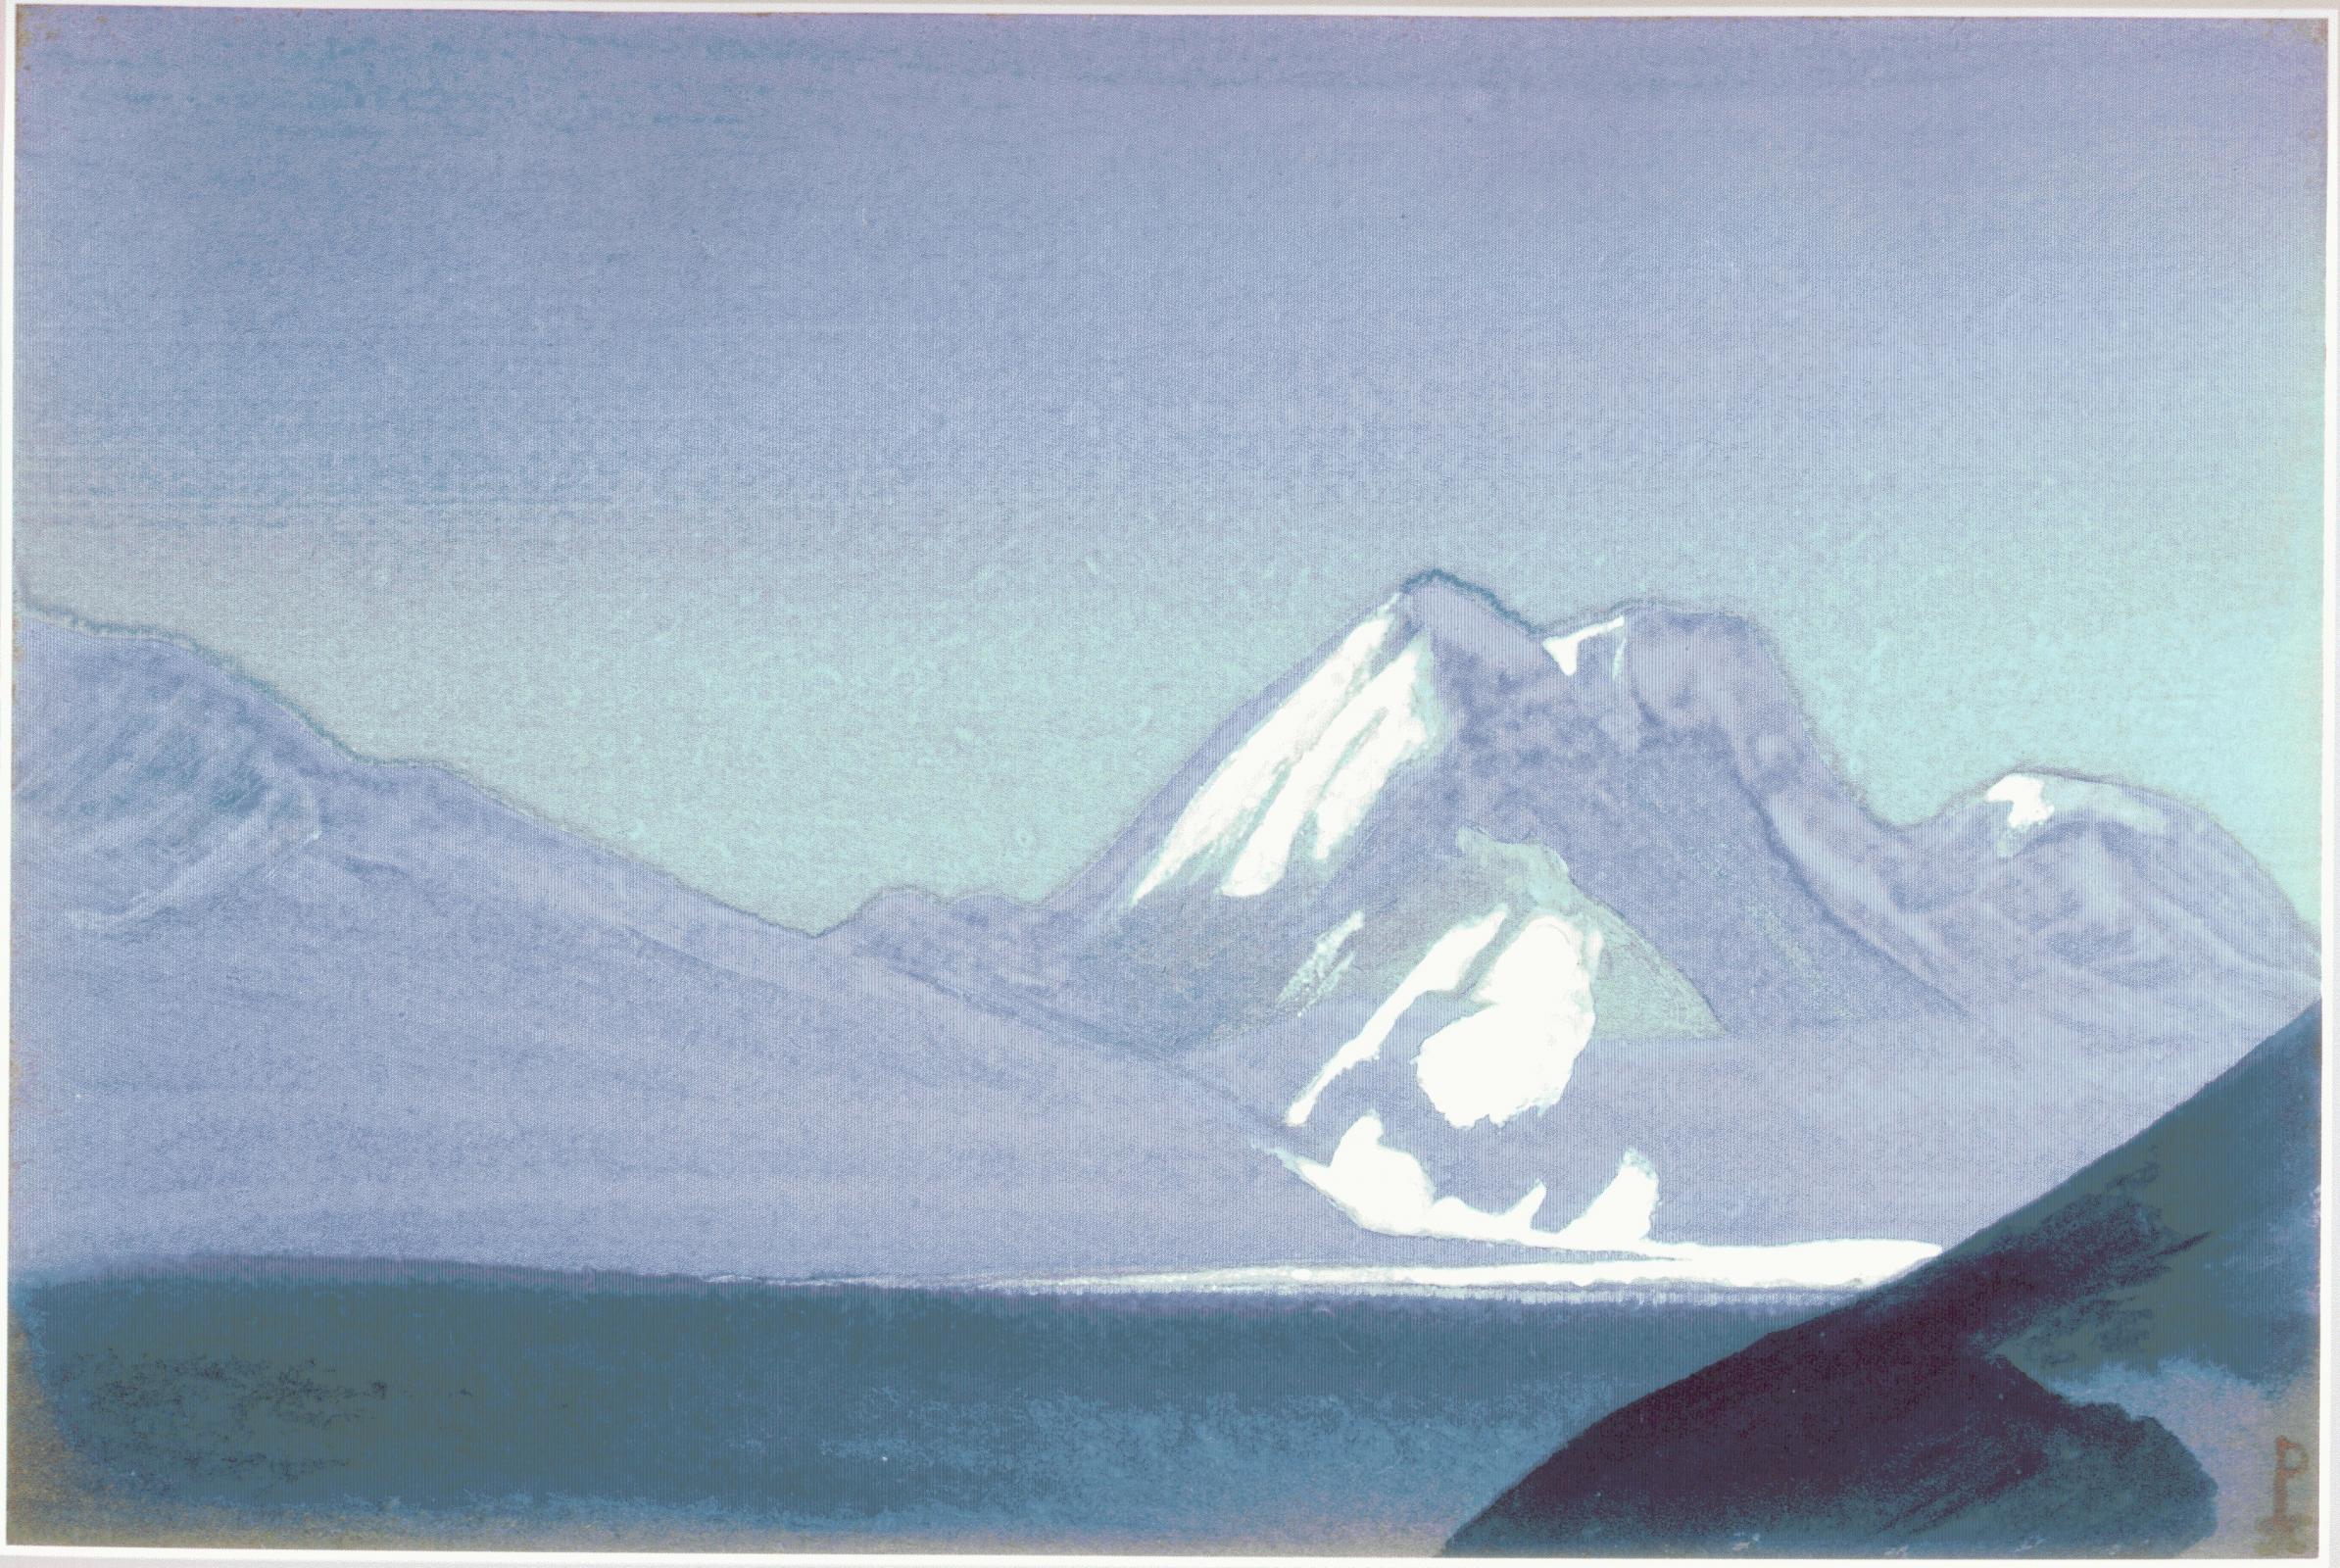 Н.К.Рерих. Гималаи. # 197 [Гималаи [Сапфировые горы]]. 1938